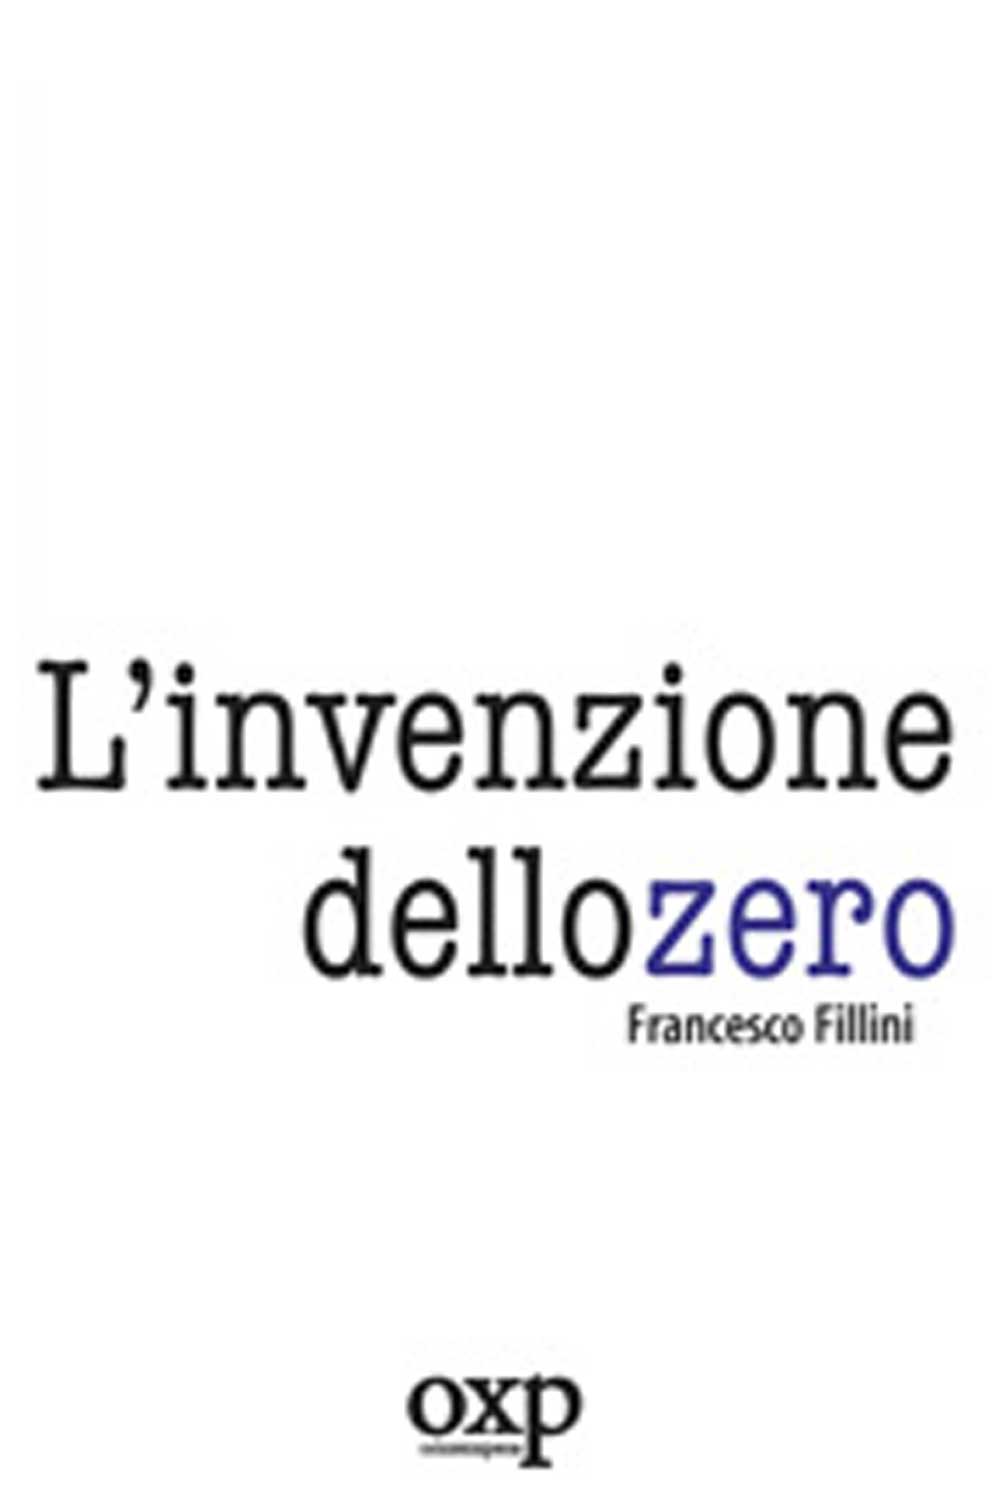 https://www.amazon.it/Linvenzione-dello-zero-Francesco-Fillini/dp/8895007042